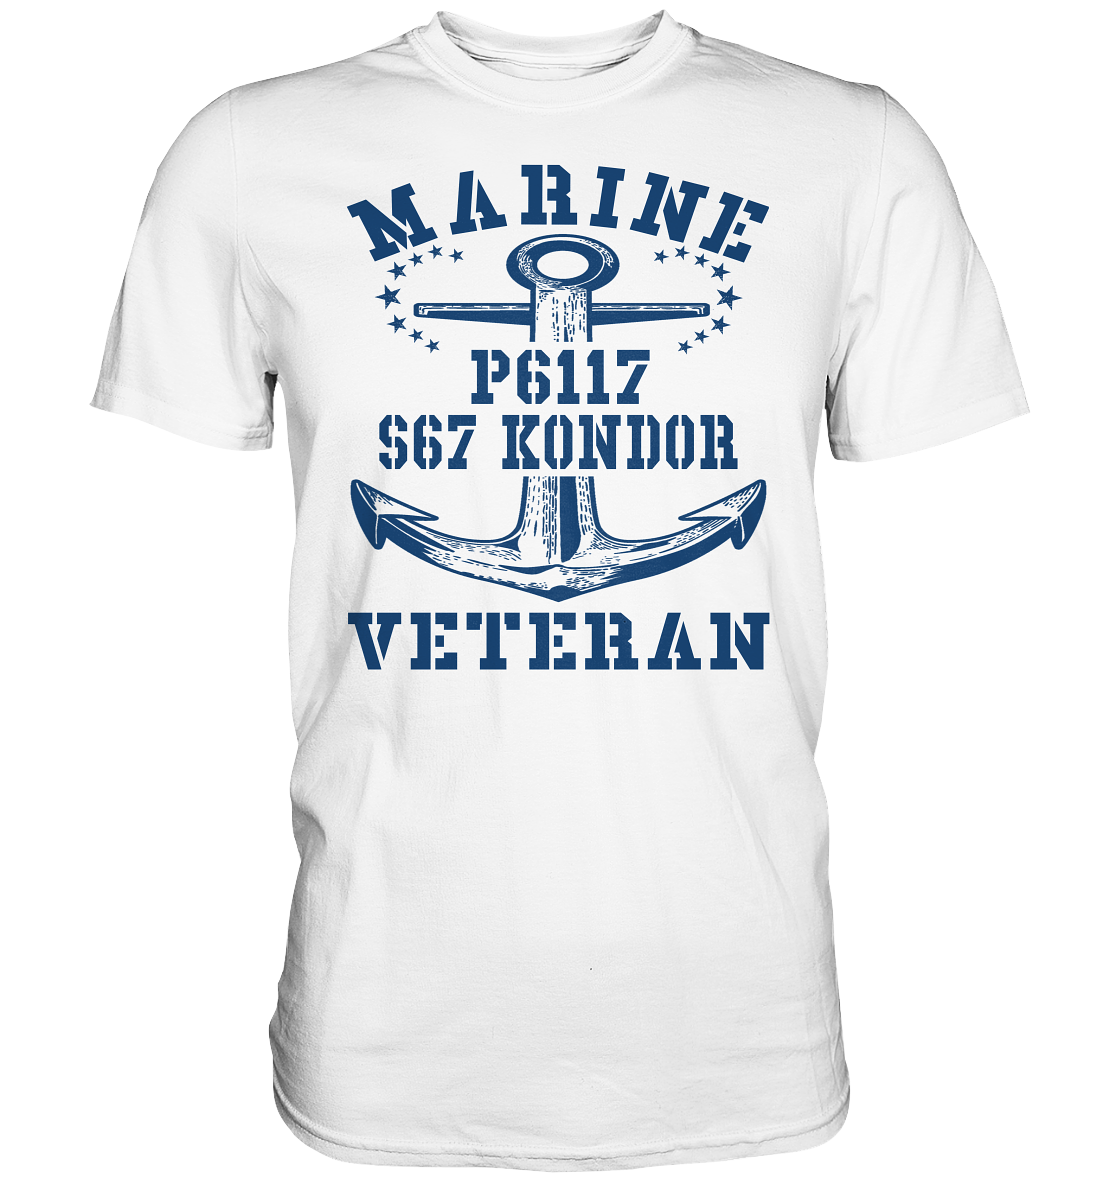 FK-Schnellboot P6117 KONDOR Marine Veteran - Premium Shirt